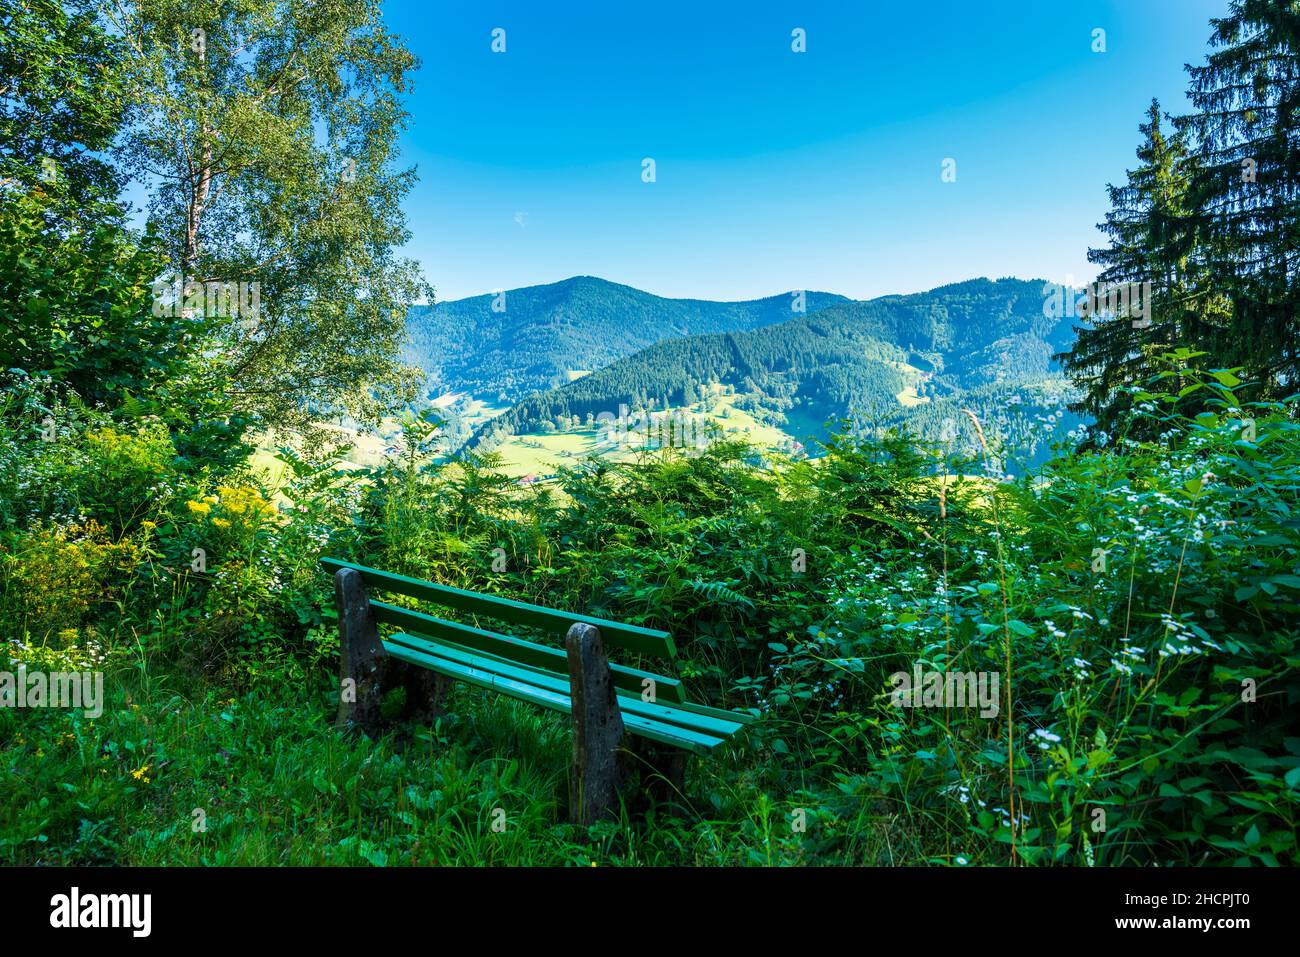 Alemania, vista panorámica del bosque negro en la naturaleza paisaje turismo región de senderismo en el borde del bosque detrás de un banco para el descanso Foto de stock